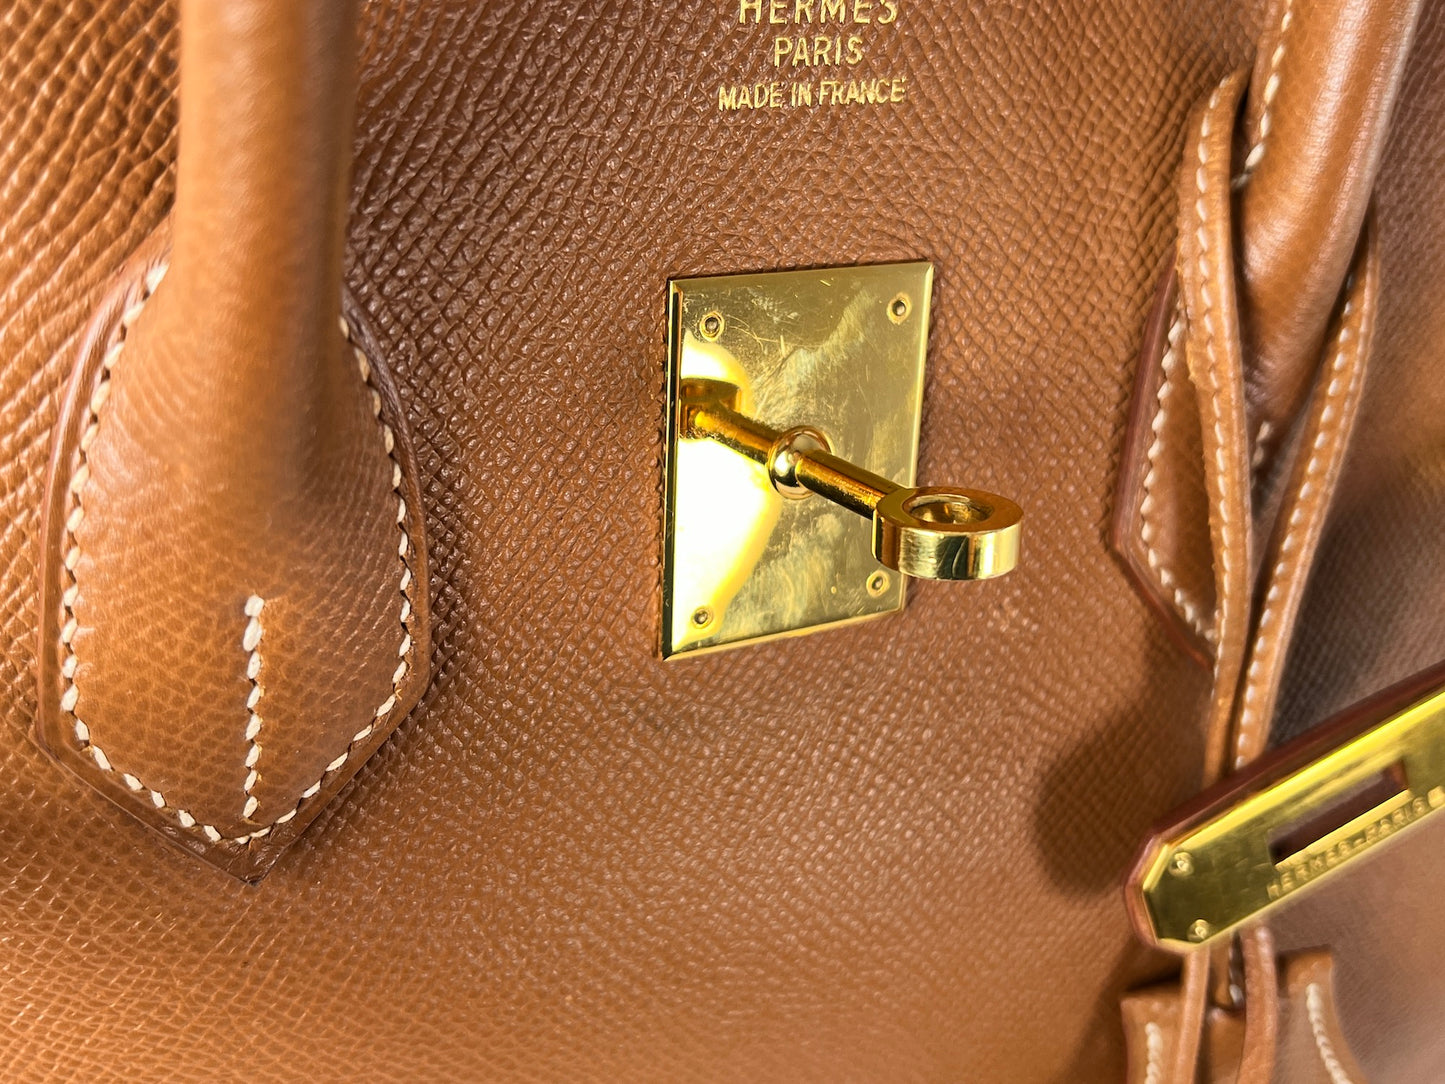 Vintage HERMES Birkin 35 Gold on Gold Courchevel Leather 1998 Satchel Bag